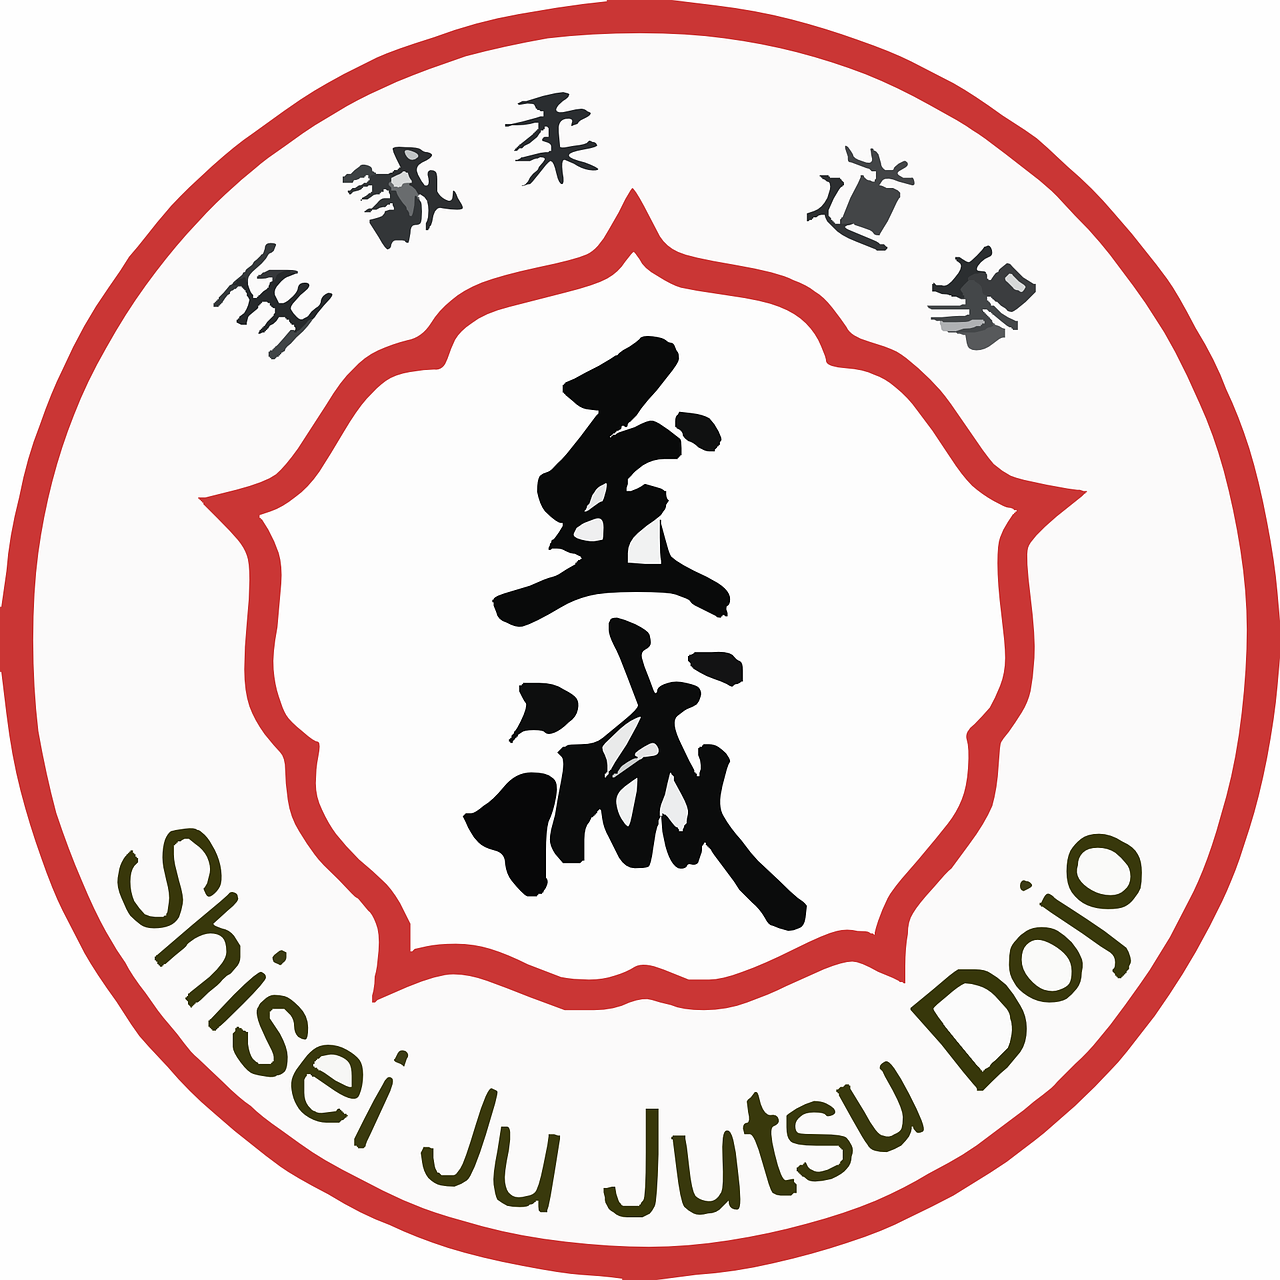 jujutsu sports martial arts free photo